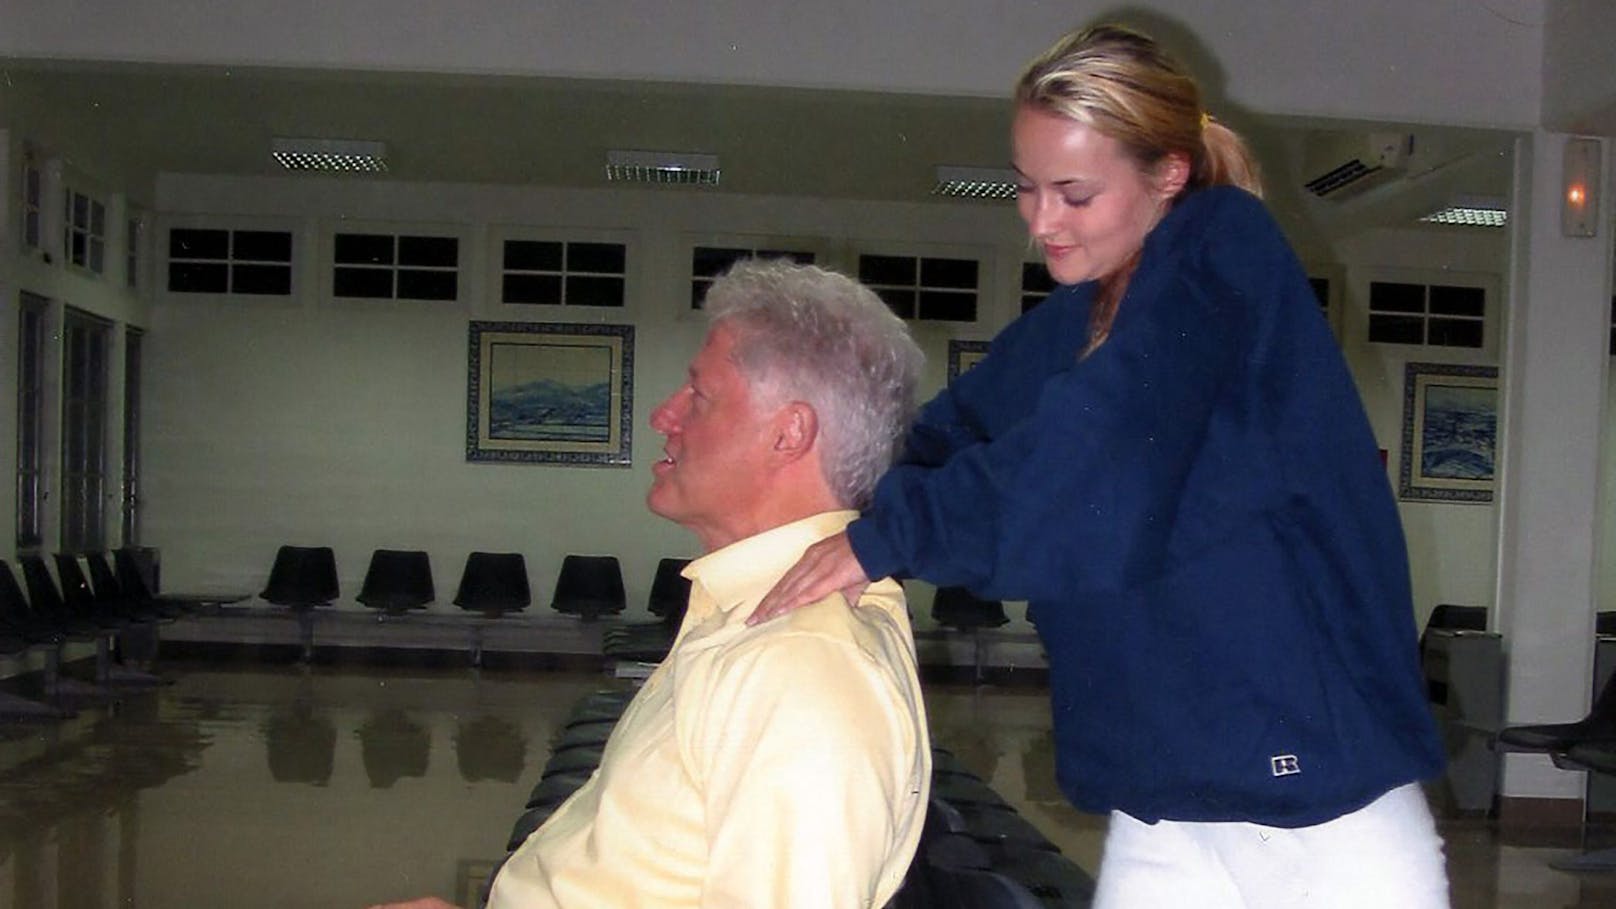 Fotos von Clintons Afrika-Reise aus dem Jahr 2002 zeigen, wie der ehemalige US-Präsident von Chauntae Davies, einem Epstein-Opfer, das als Flugbegleiterin in dem Jet mit dem Spitznamen "Lolita Express" arbeitete, massiert wird.